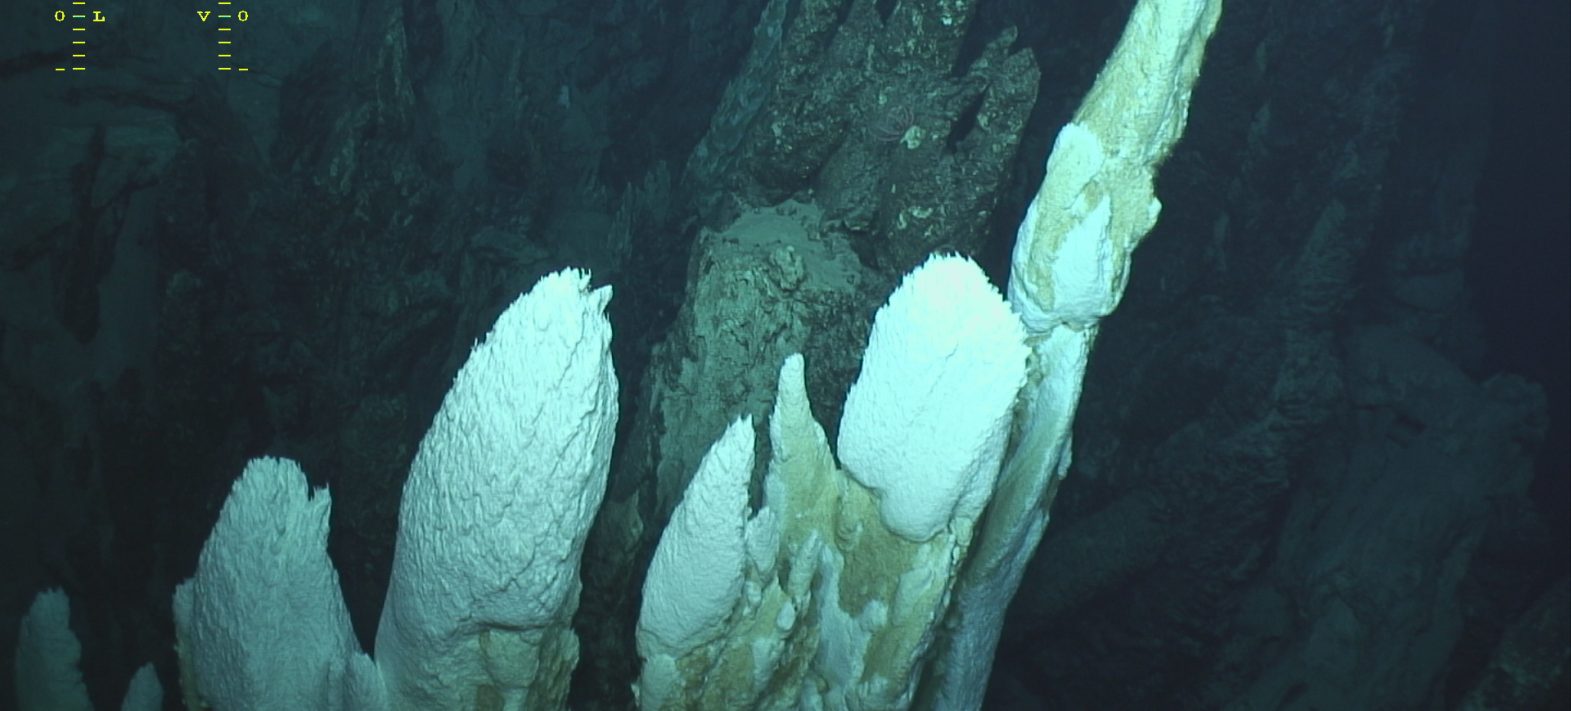 Première description des communautés microbiennes du site hydrothermal alcalin d’Old City, dorsale sud-ouest Indienne